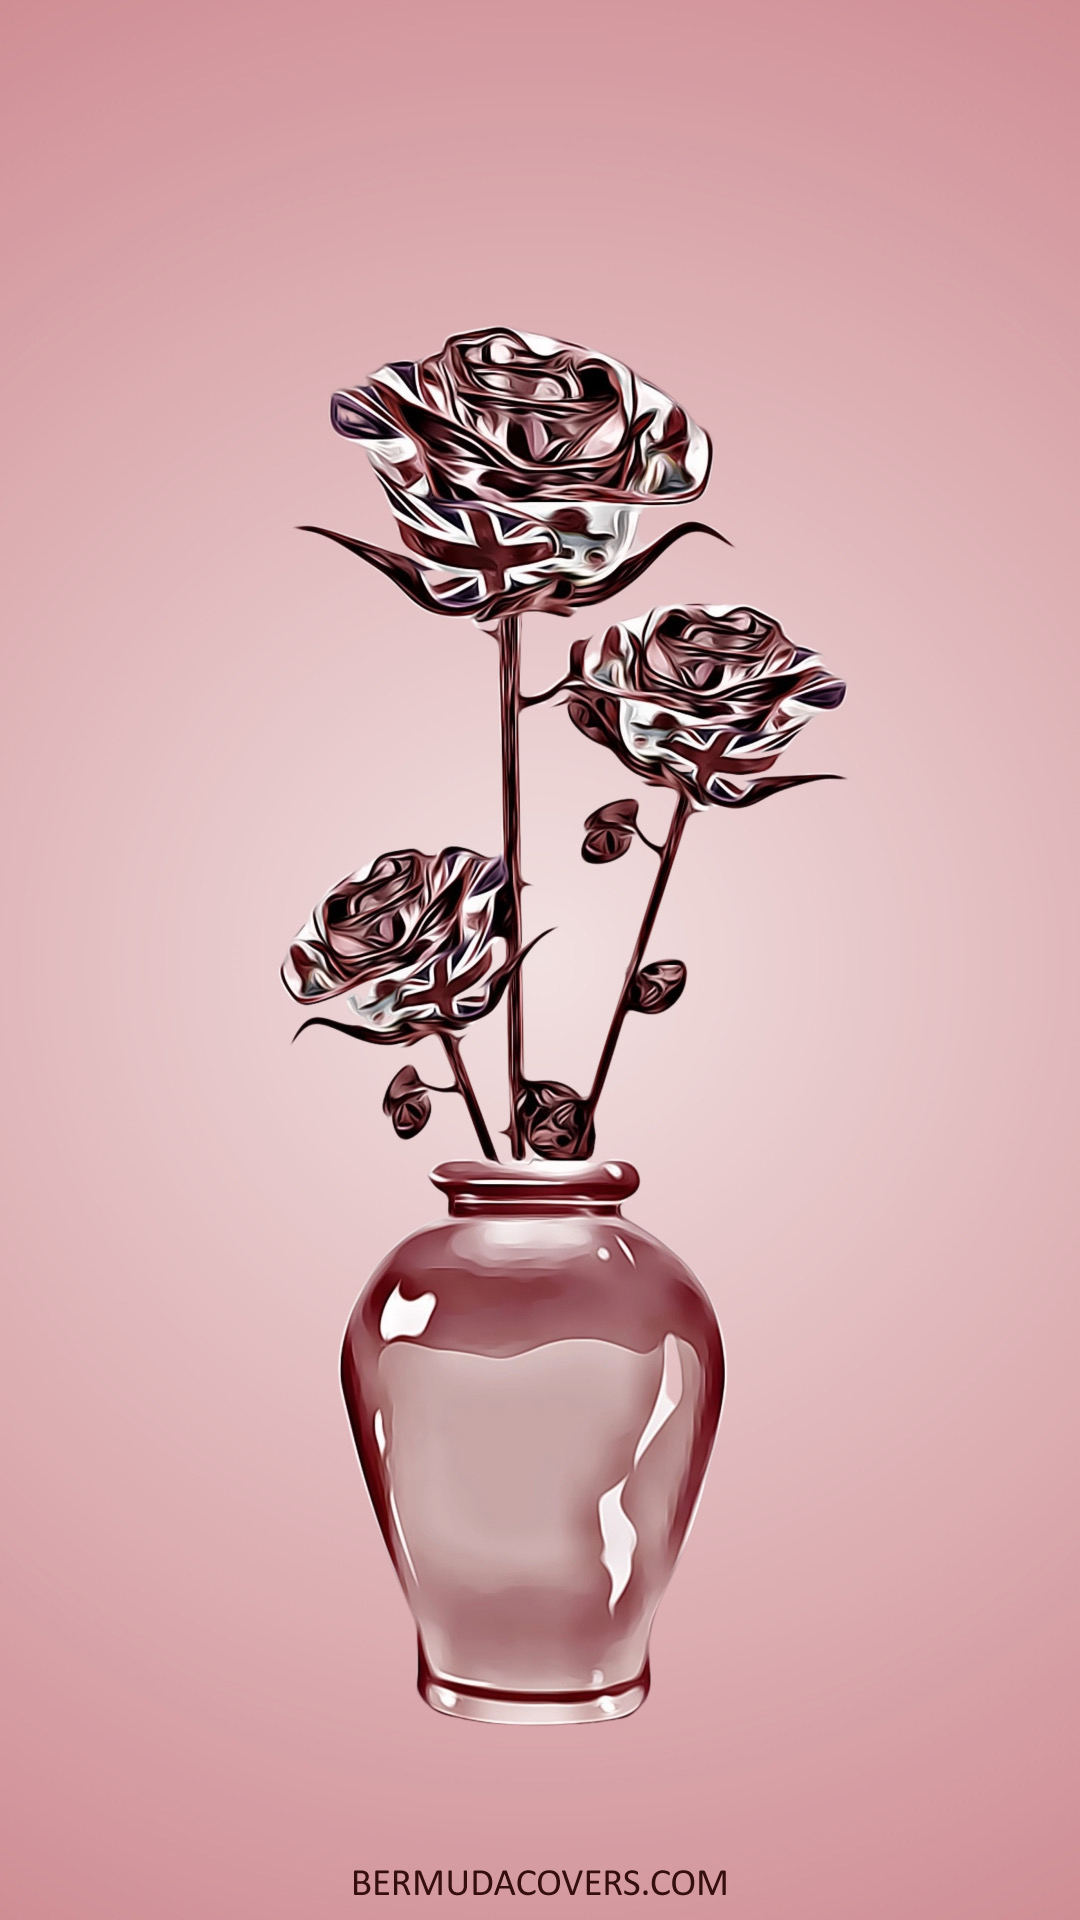 Reflective Bermuda Roses in Vase social media phone screensaver wallpaper lock screen graphic 152627